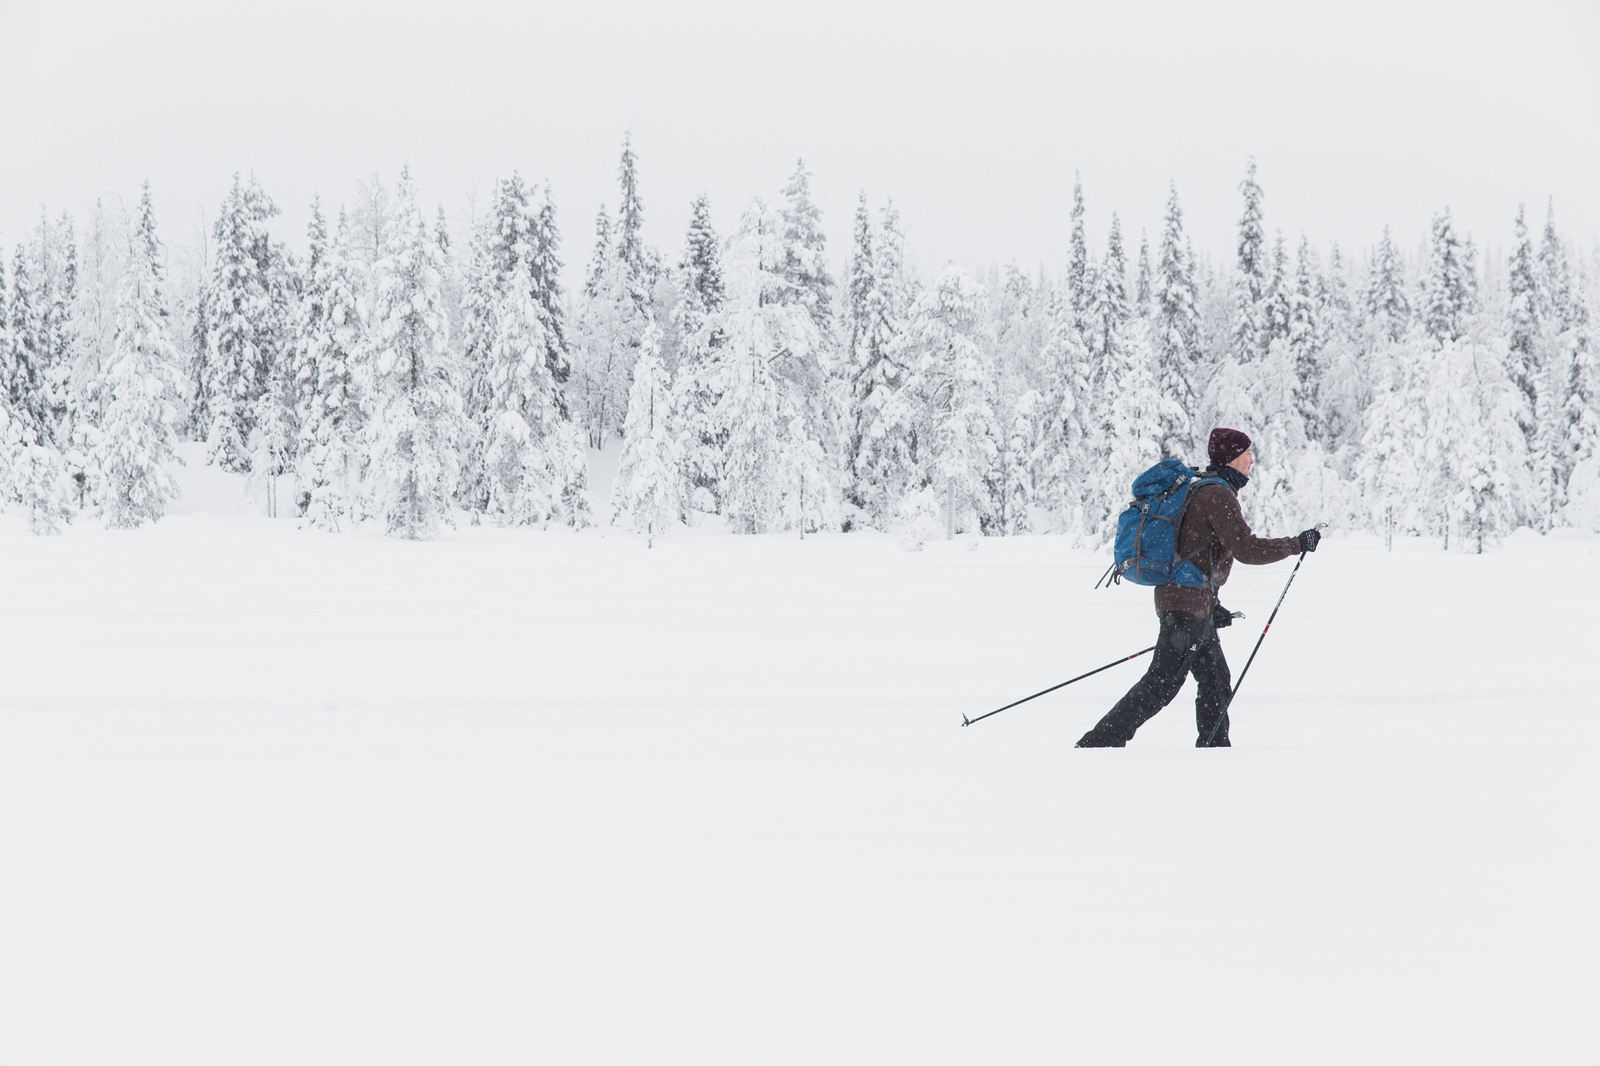 Murtomaahiihtäjä rinkka selässä. Taustalla luminen metsä.